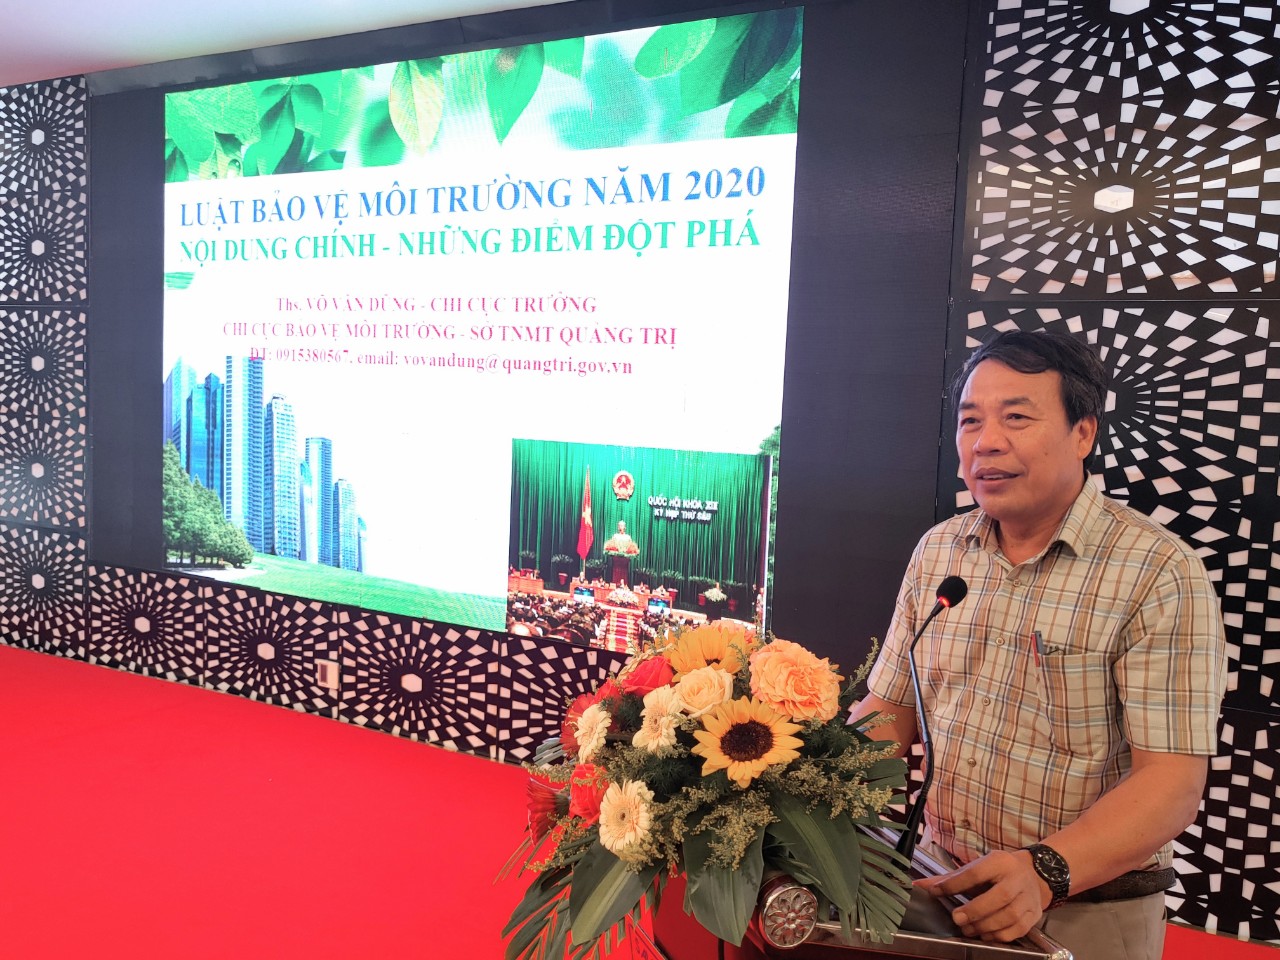 Hội nghị tuyên truyền, phổ biến chính sách, pháp luật về bảo vệ môi trường cho hội viên Hội Luật gia Việt Nam